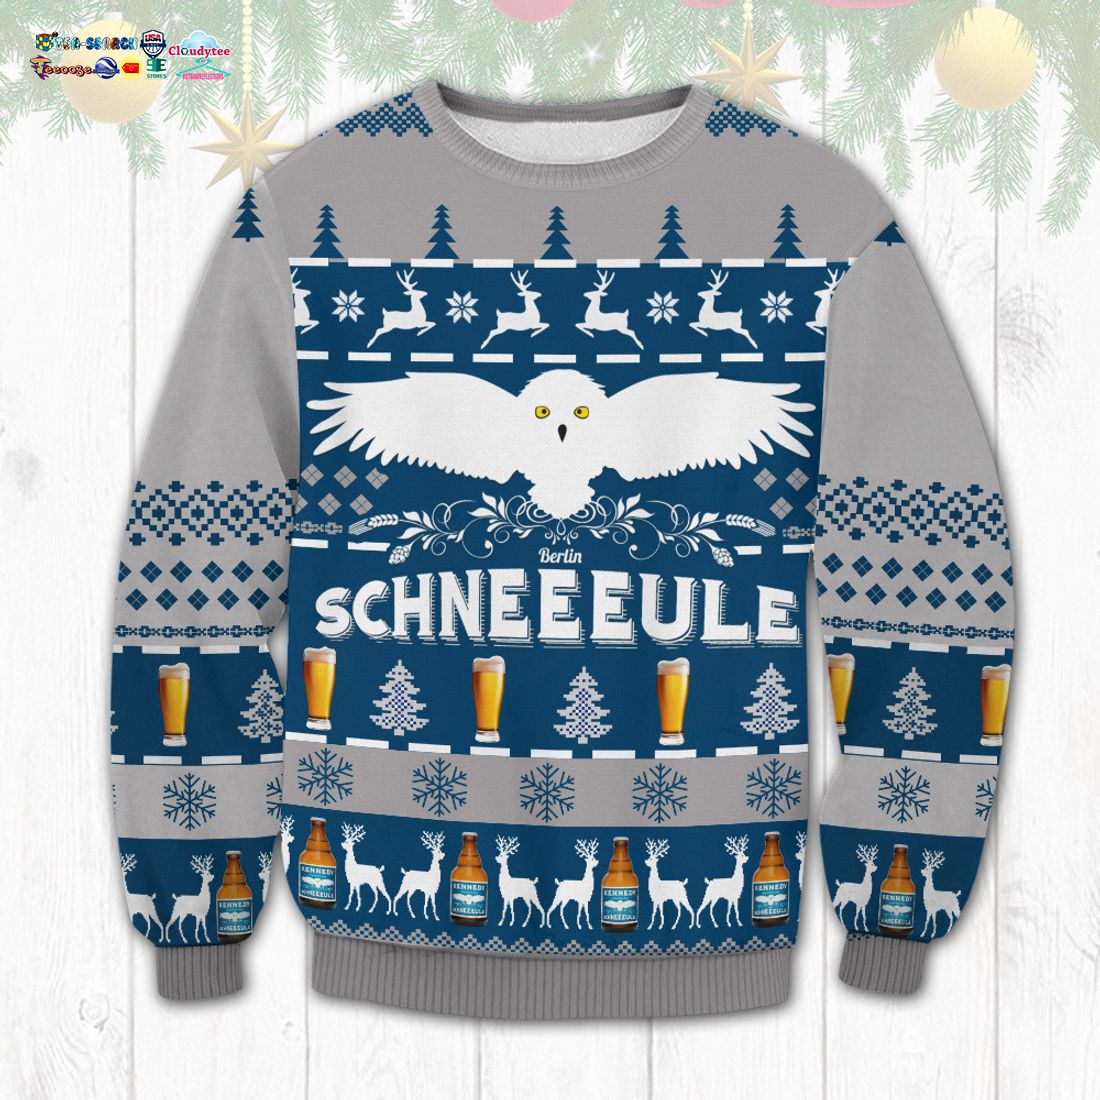 Schneeeule Ugly Christmas Sweater